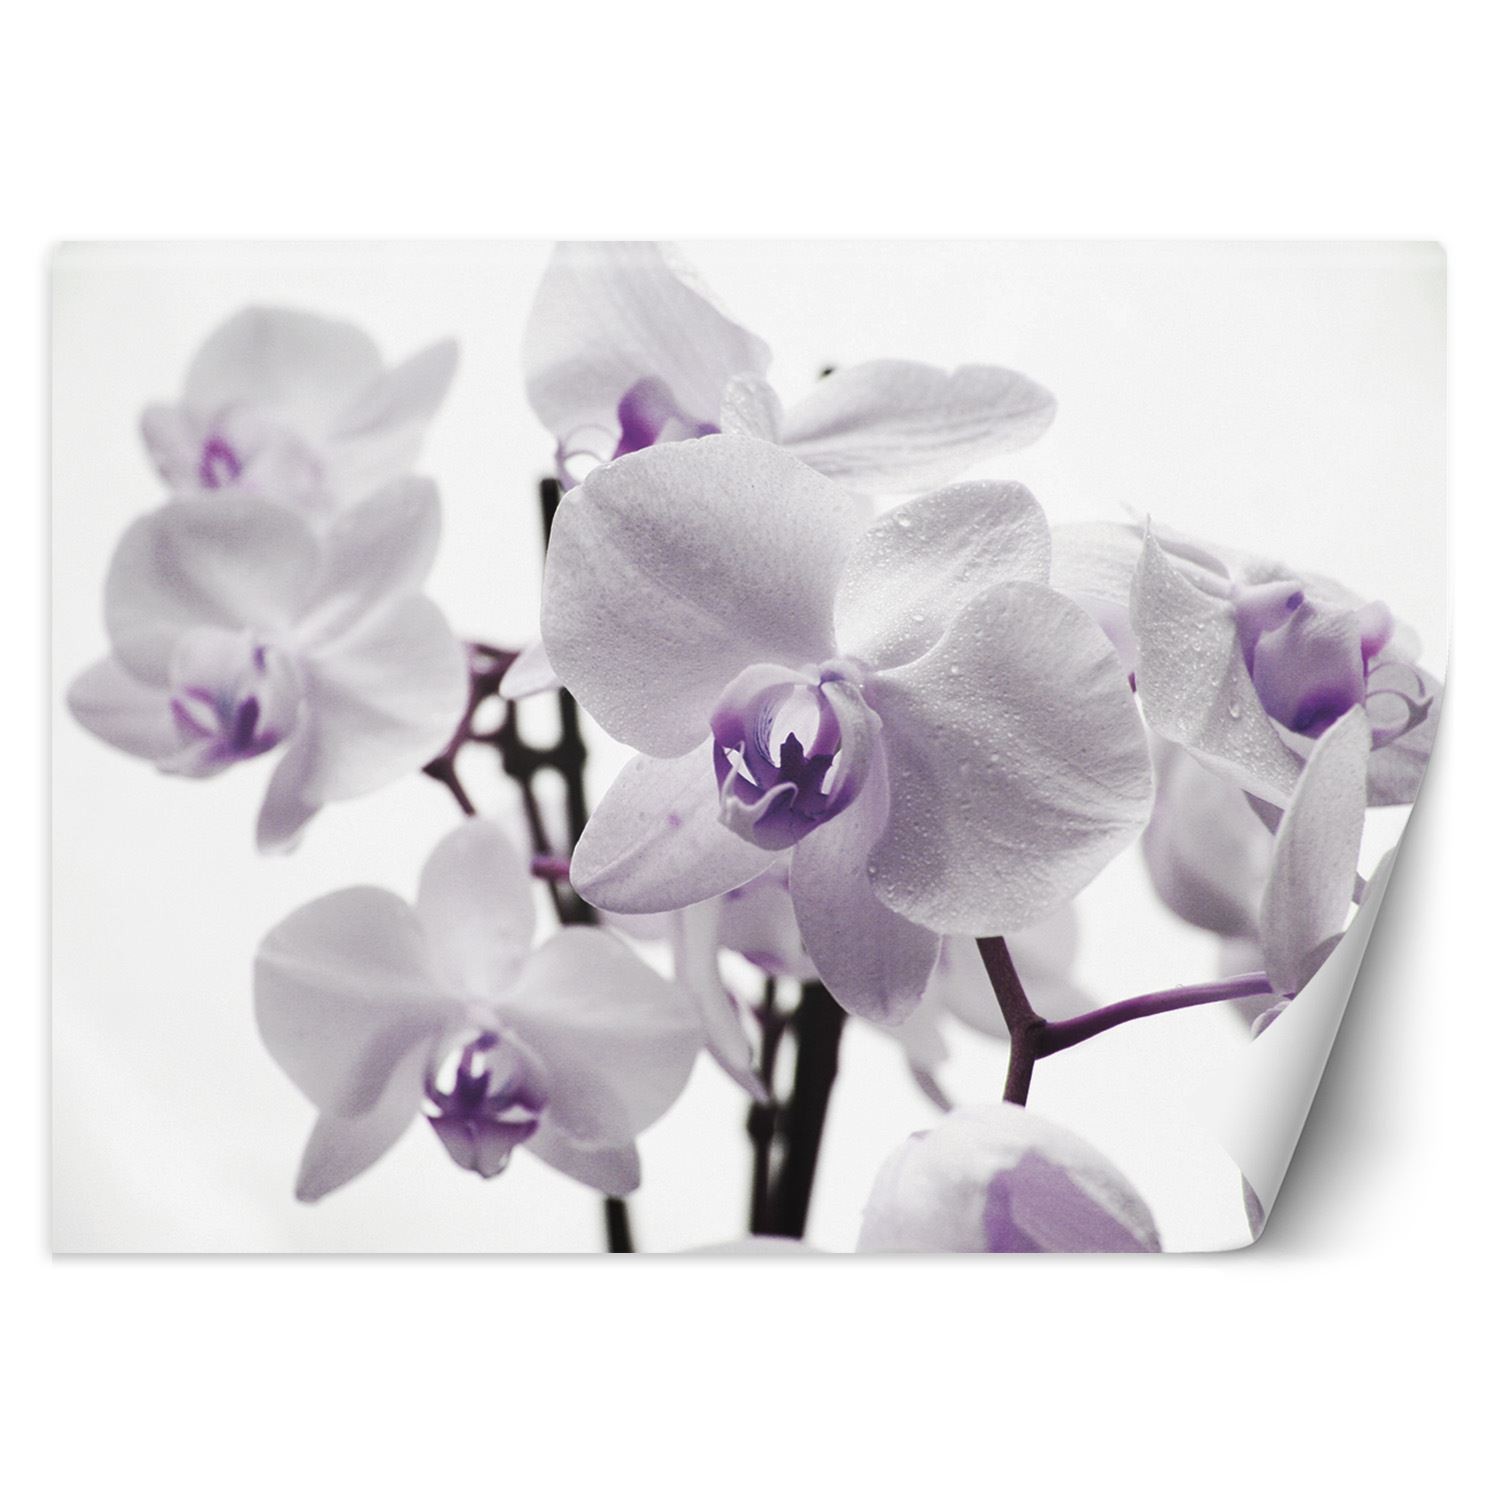 Trend24 – Behang – Orchidee In Bloom – Vliesbehang – Fotobehang – Behang Woonkamer – 450x315x2 cm – Incl. behanglijm